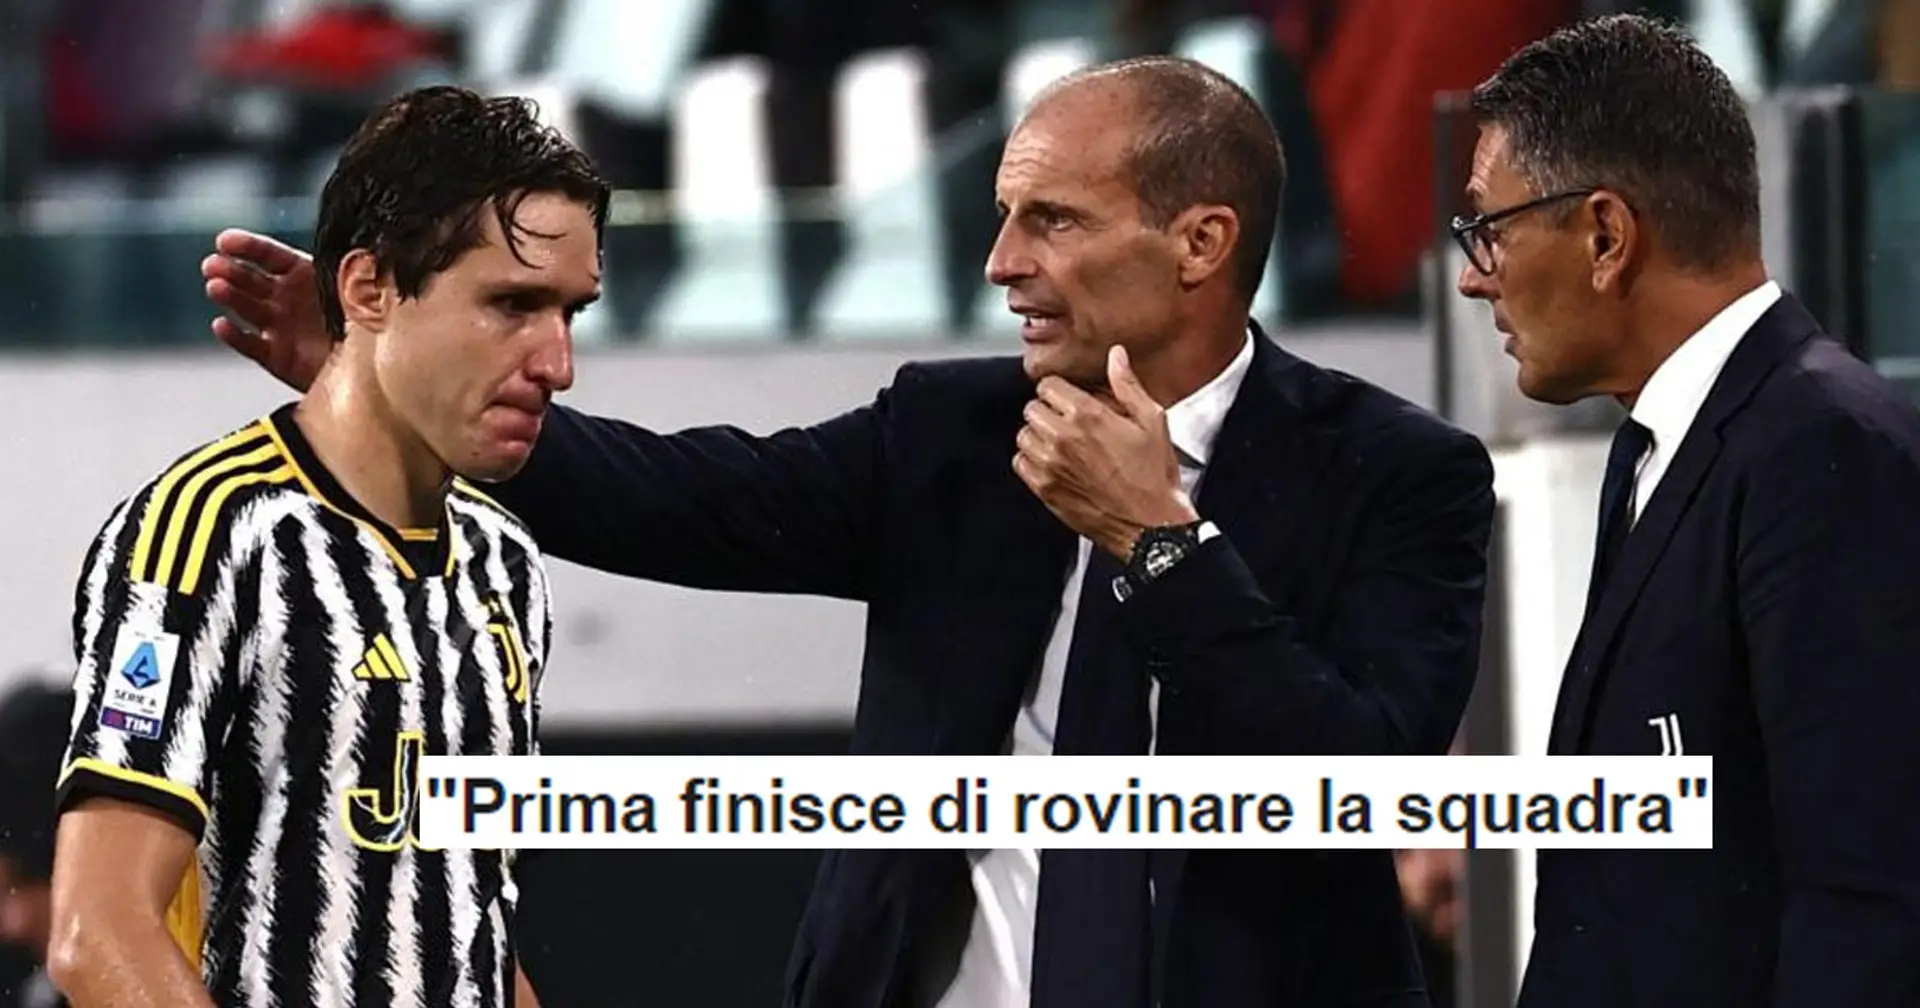 "Prima finisce di rovinare la squadra", la reazione dei tifosi della Juventus al provvedimento di Allegri verso Chiesa